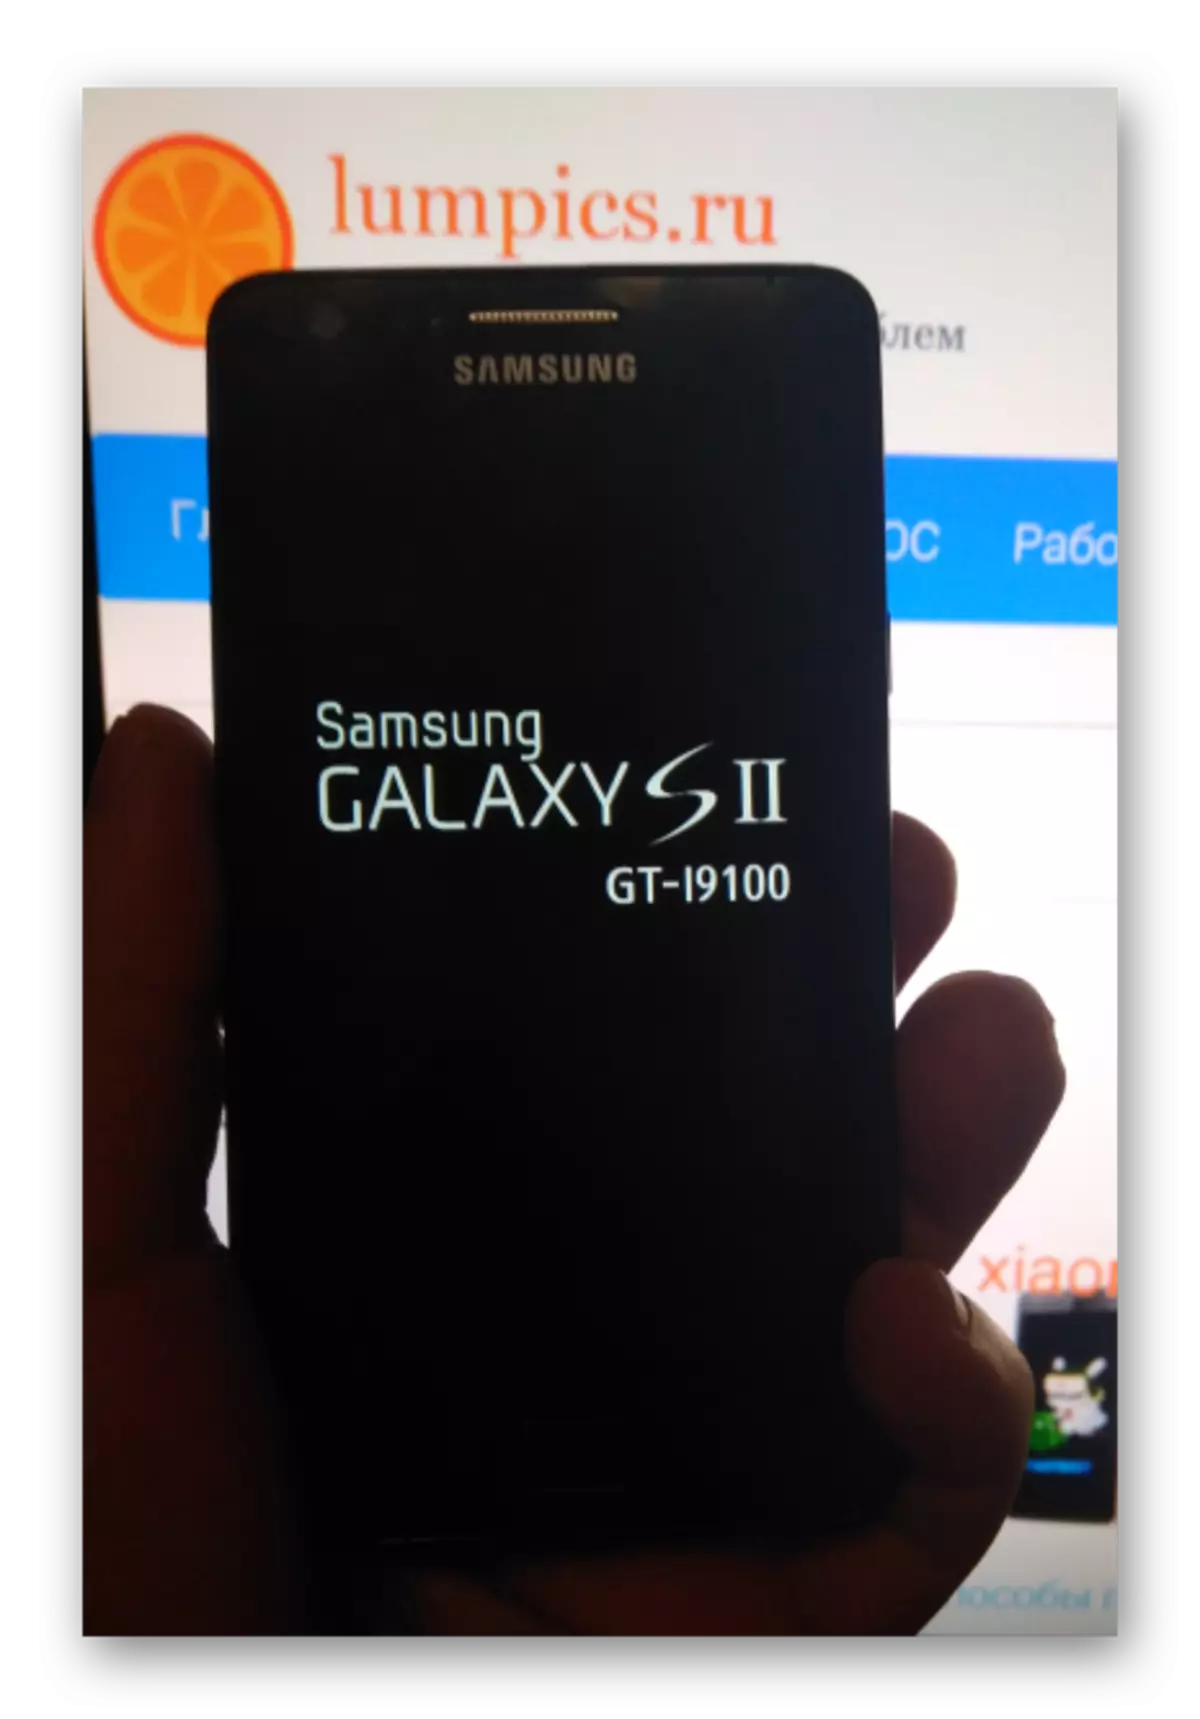 Samsung Galaxy S 2 GT-I9100 Batteriladdning Innan du återställer och uppgraderar